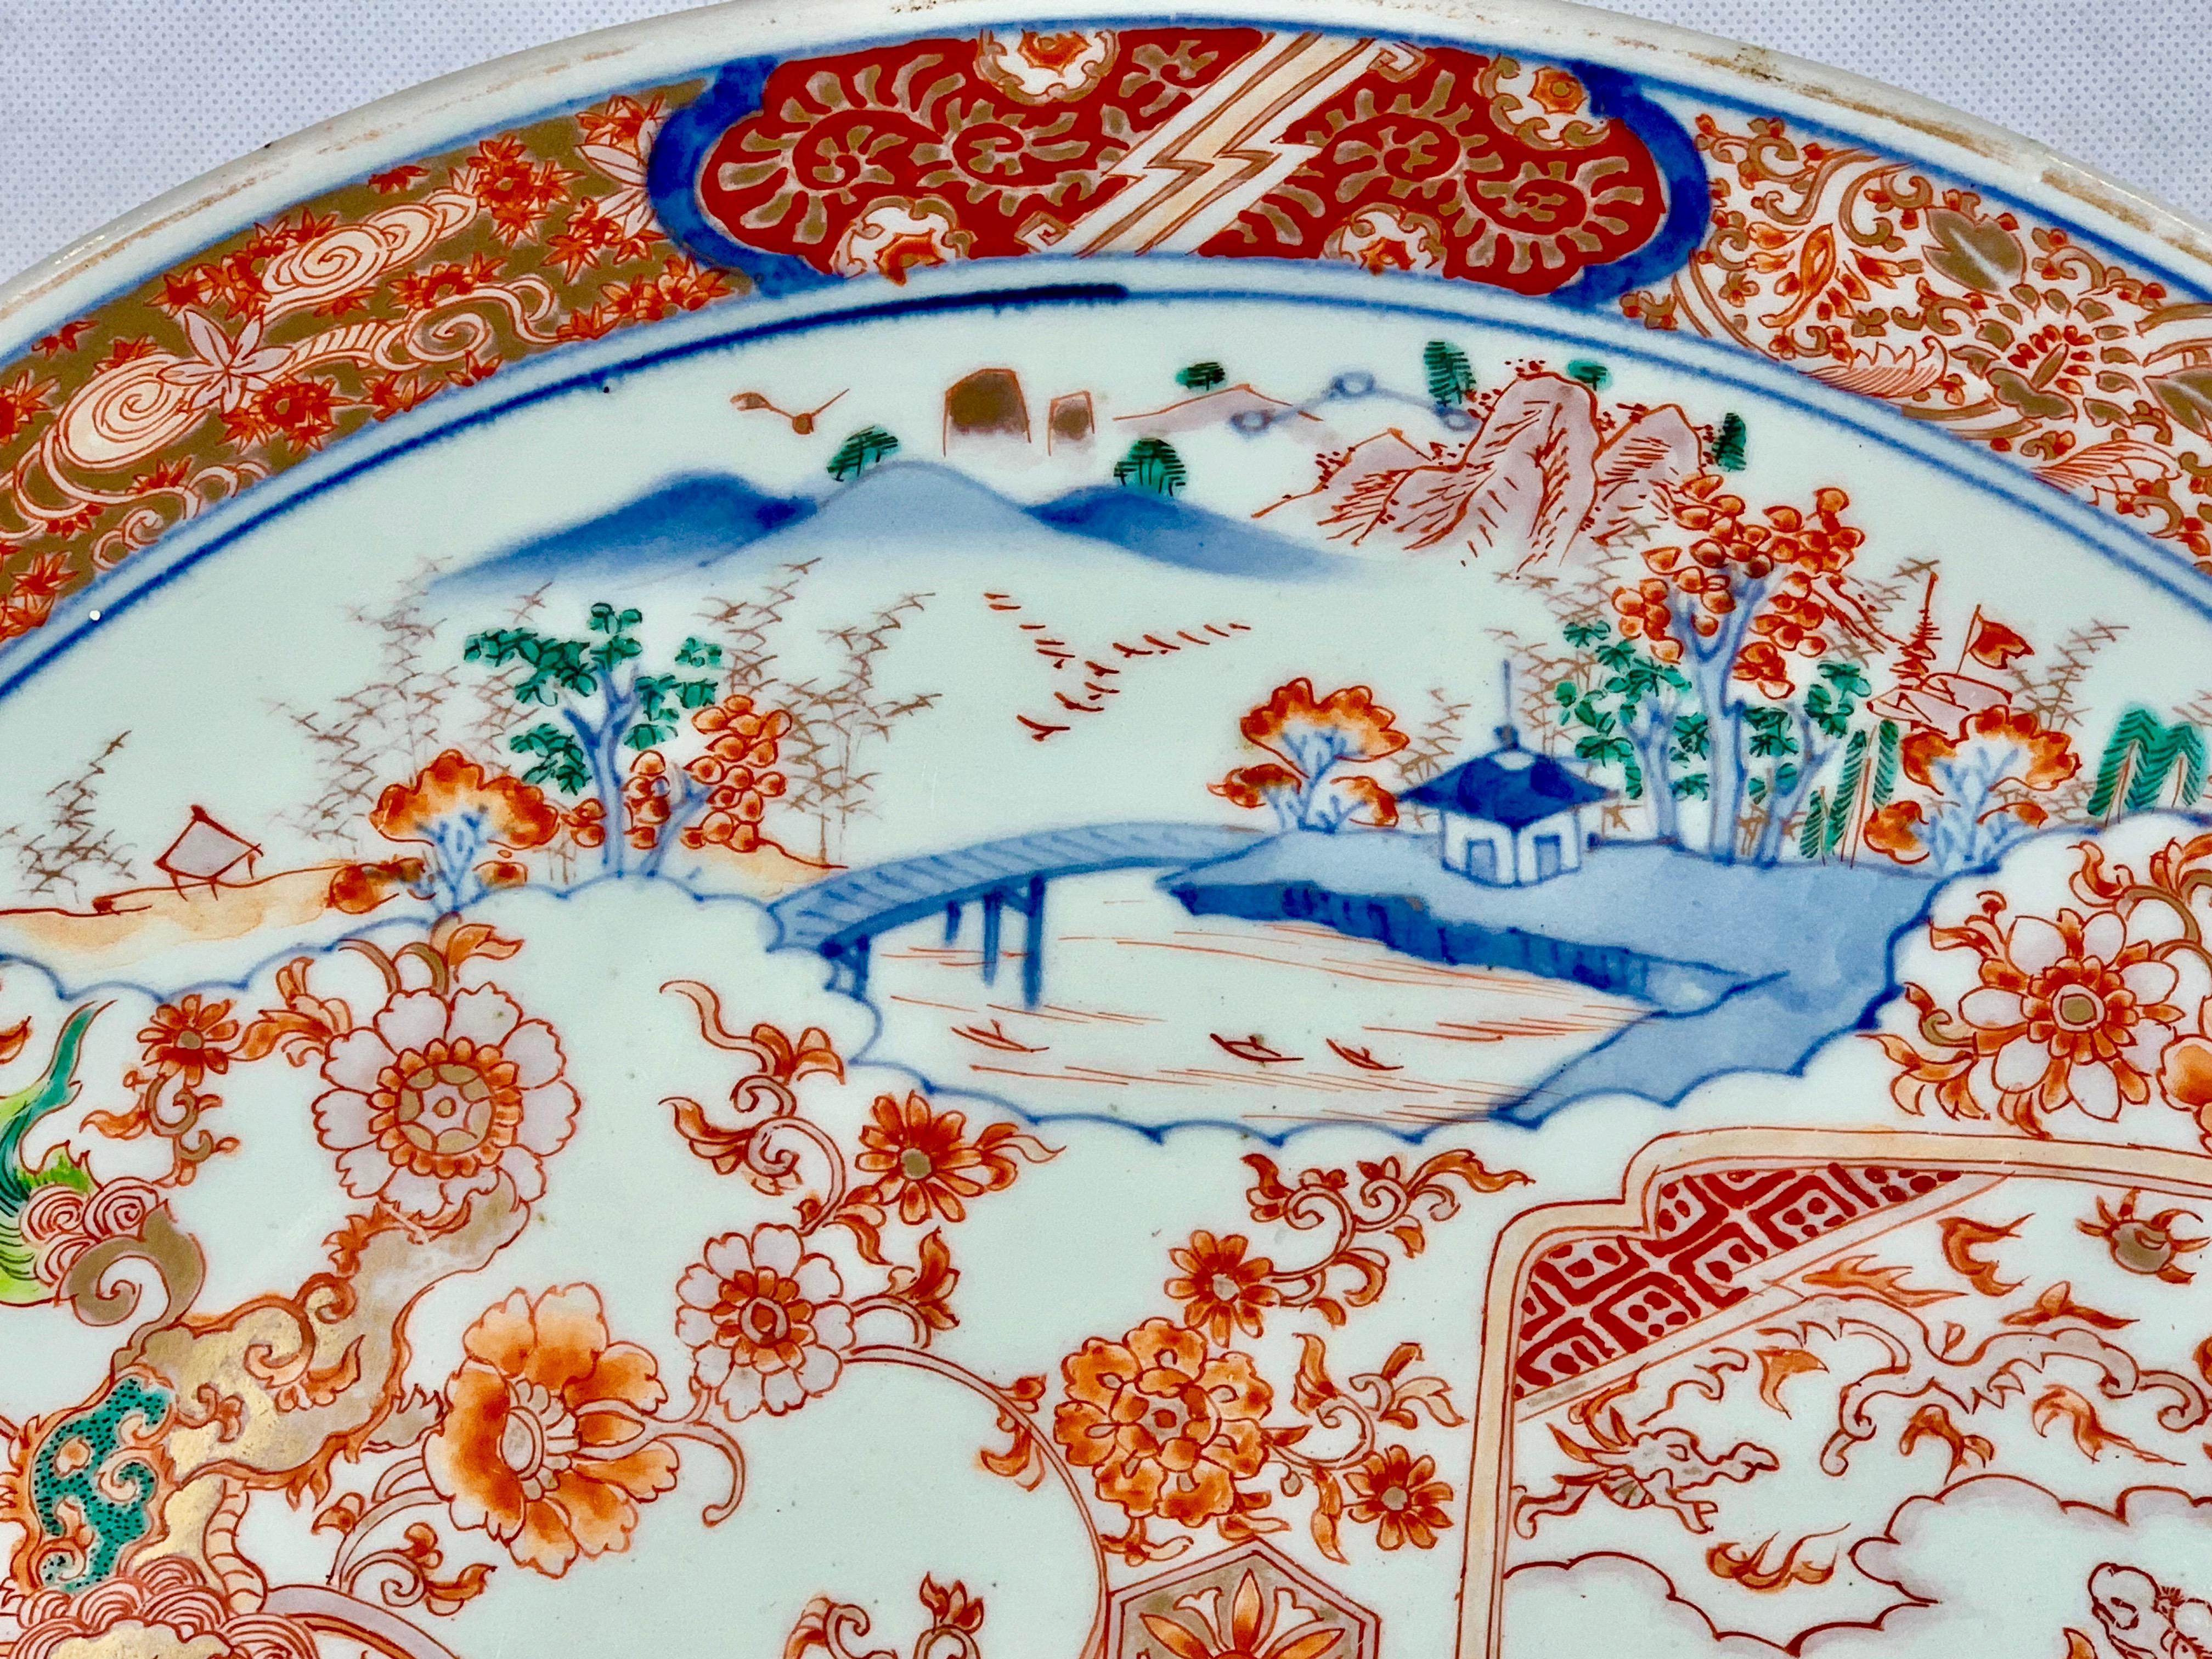 Große fein dekorierte japanische Meiji-Periode  Ladegerät aus Imari-Porzellan. Die Dekoration besteht aus geformten Paneelen, die von Blumenranken überlagert werden. Die stilisierte Umrandung hat Wolkenformen auf einem Laubsägearbeiten-Hintergrund.